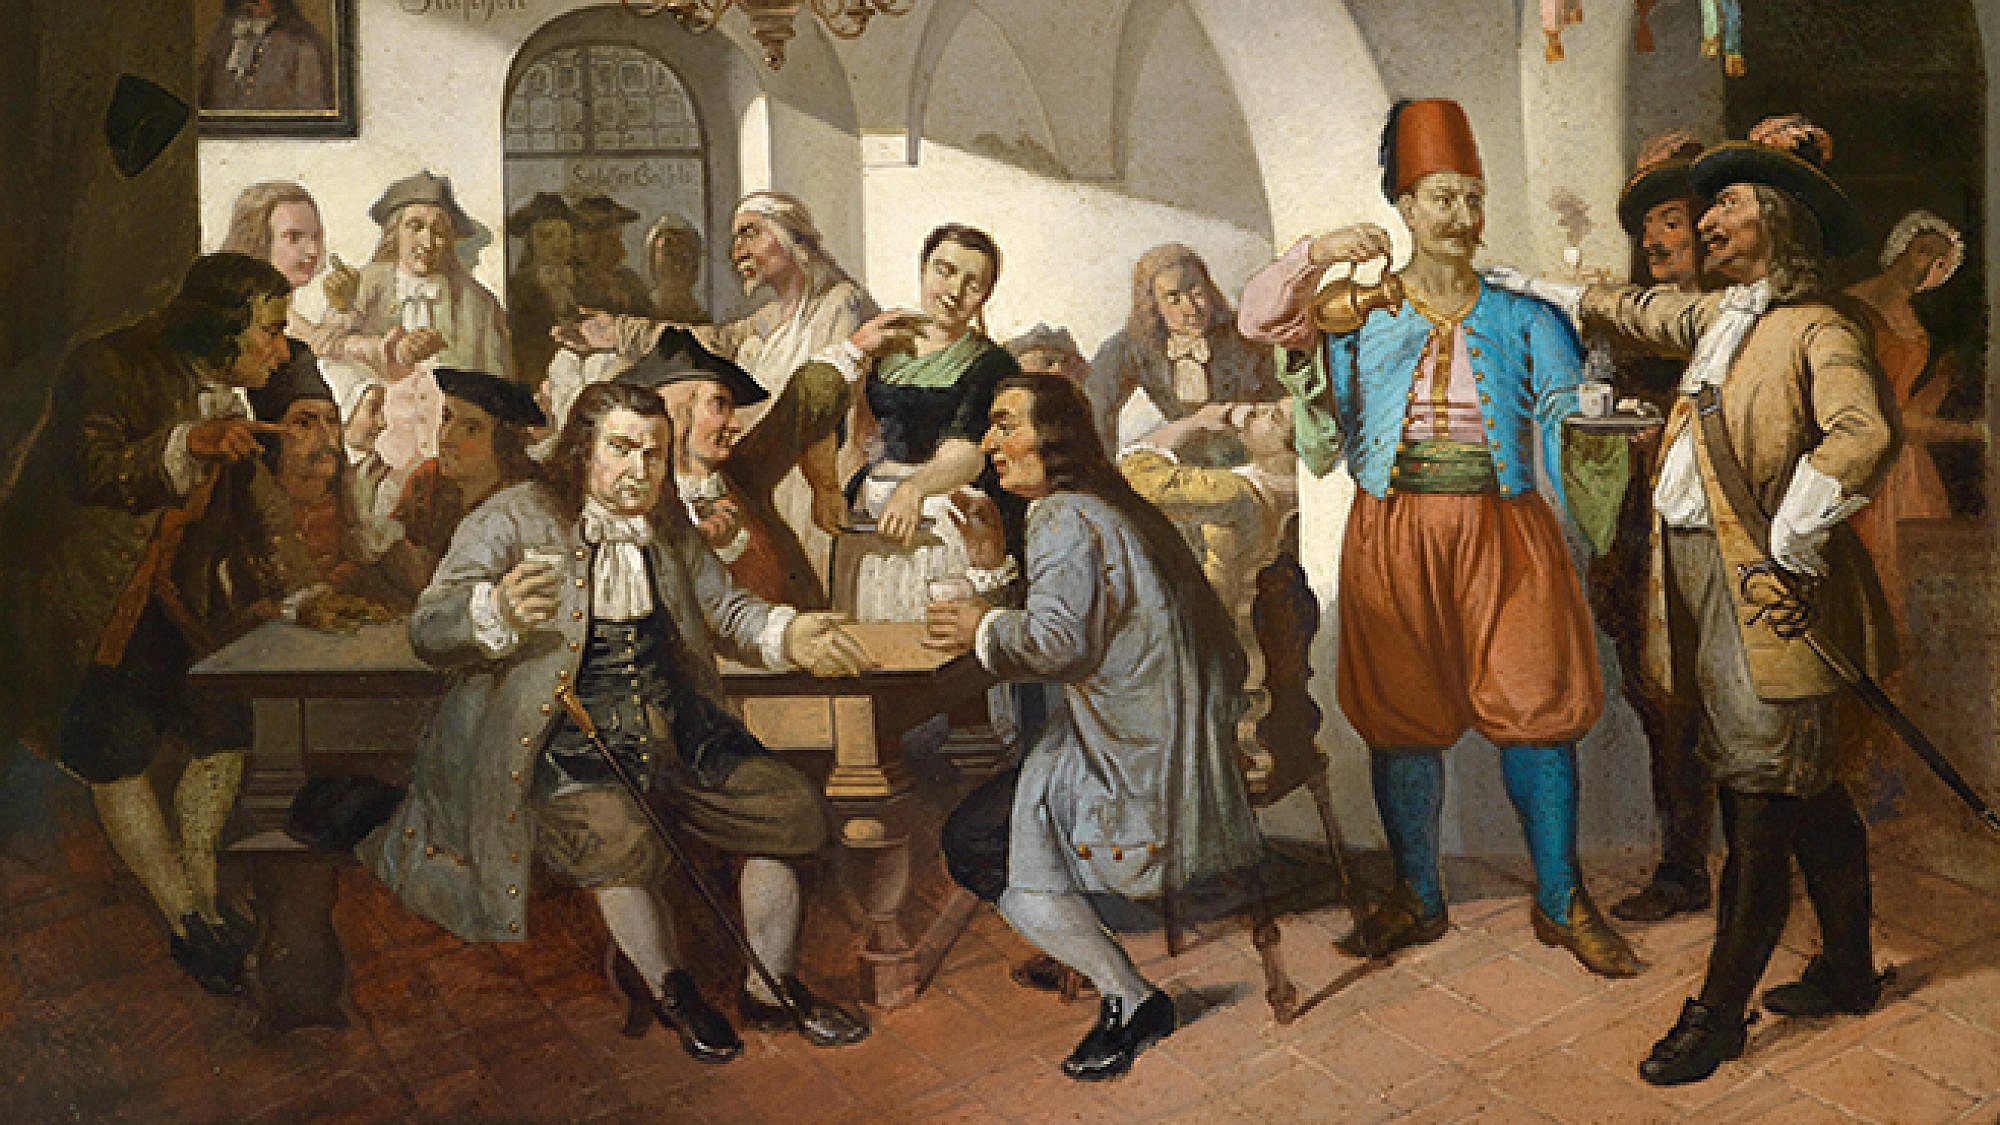 דיונים על פוליטיקה ומסחר בית קפה מסוף המאה ה-19. Zuden blauen Flaschen painting